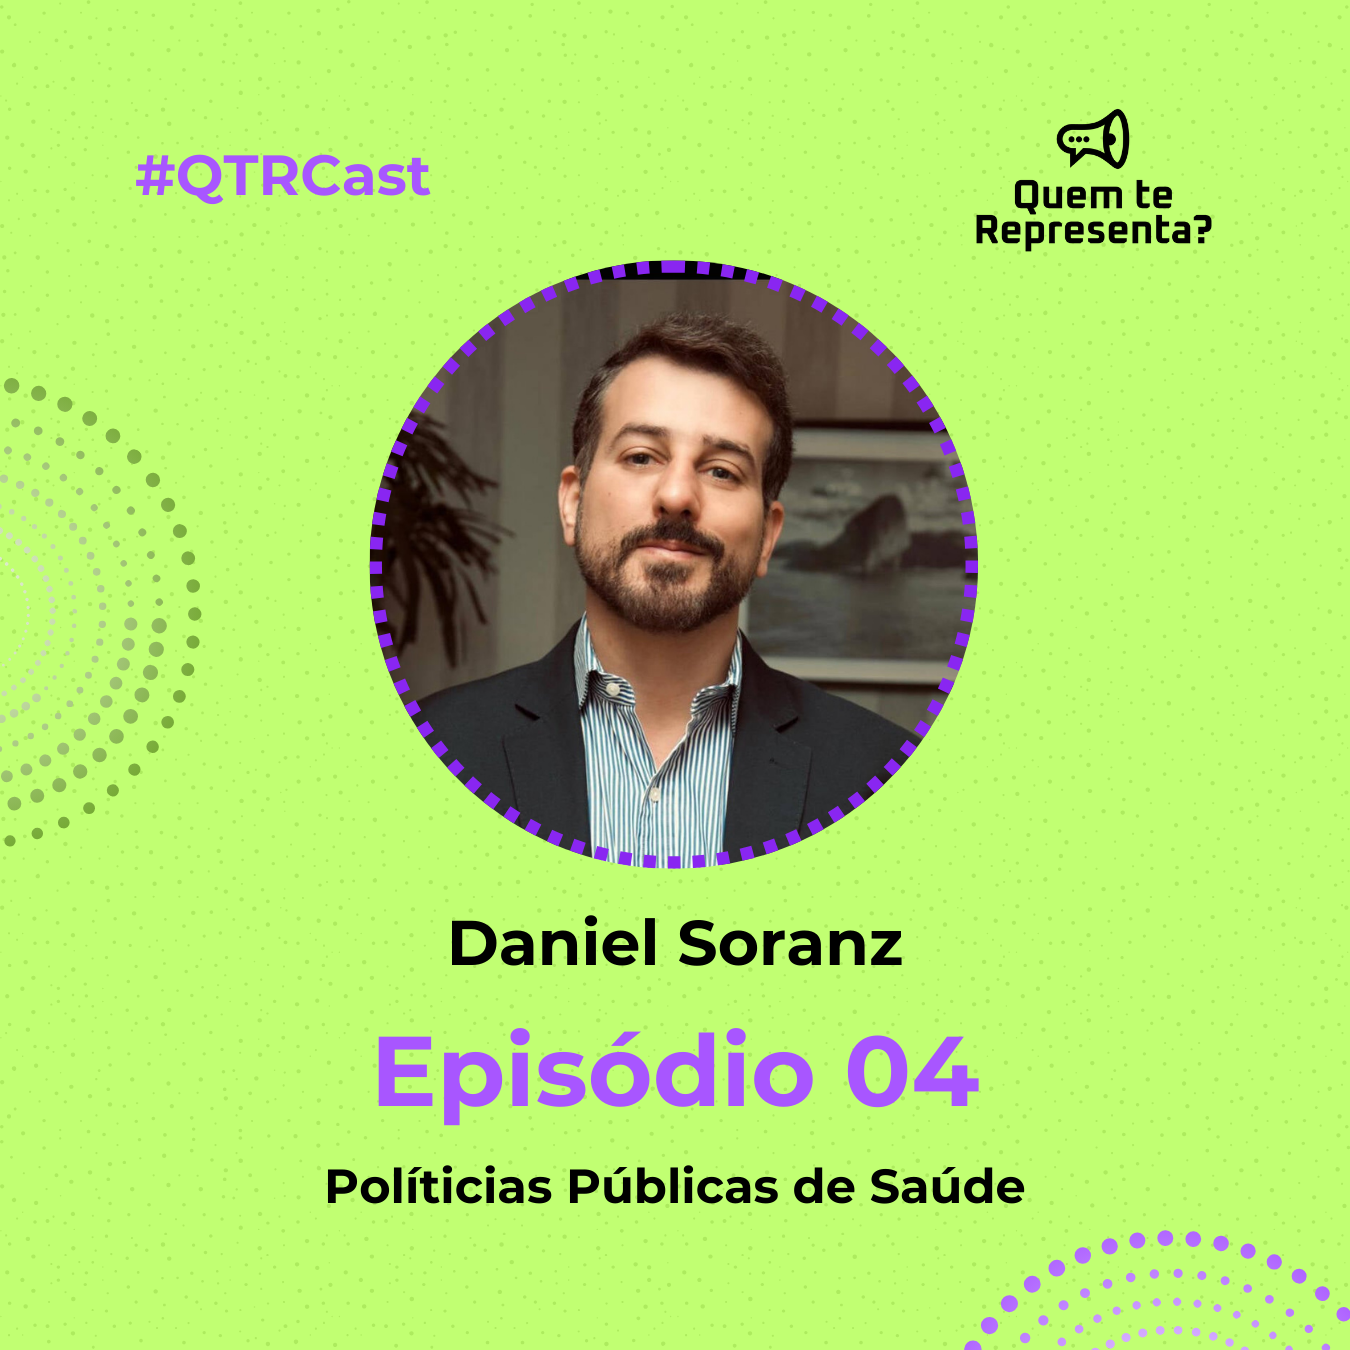 Daniel Soranz: Políticas Públicas de Saúde